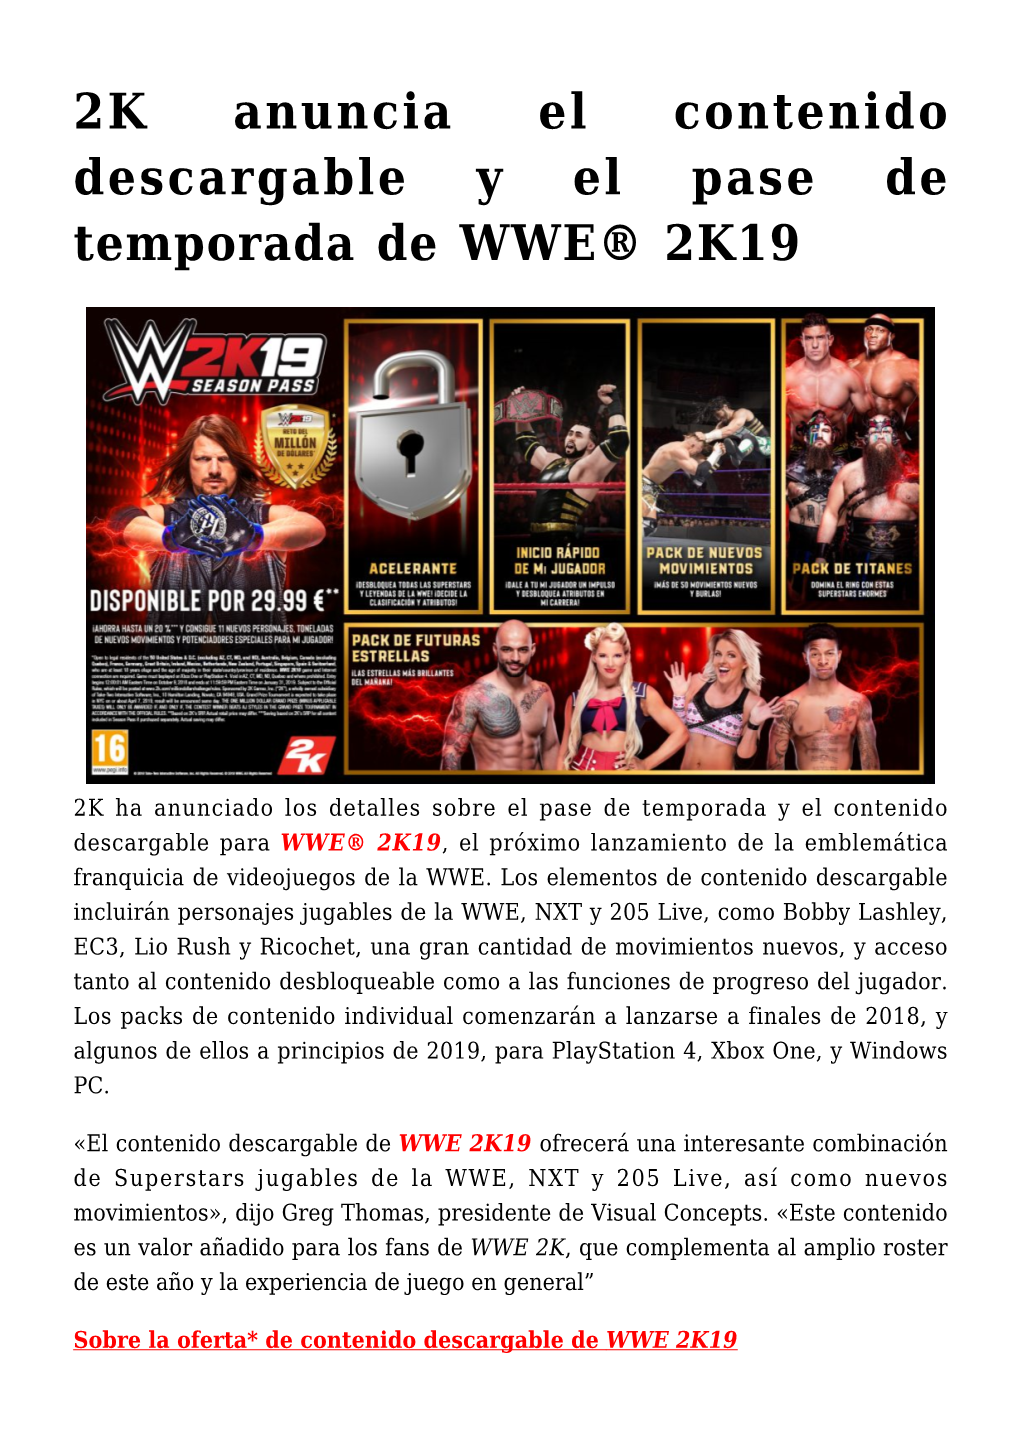 2K Anuncia El Contenido Descargable Y El Pase De Temporada De WWE® 2K19